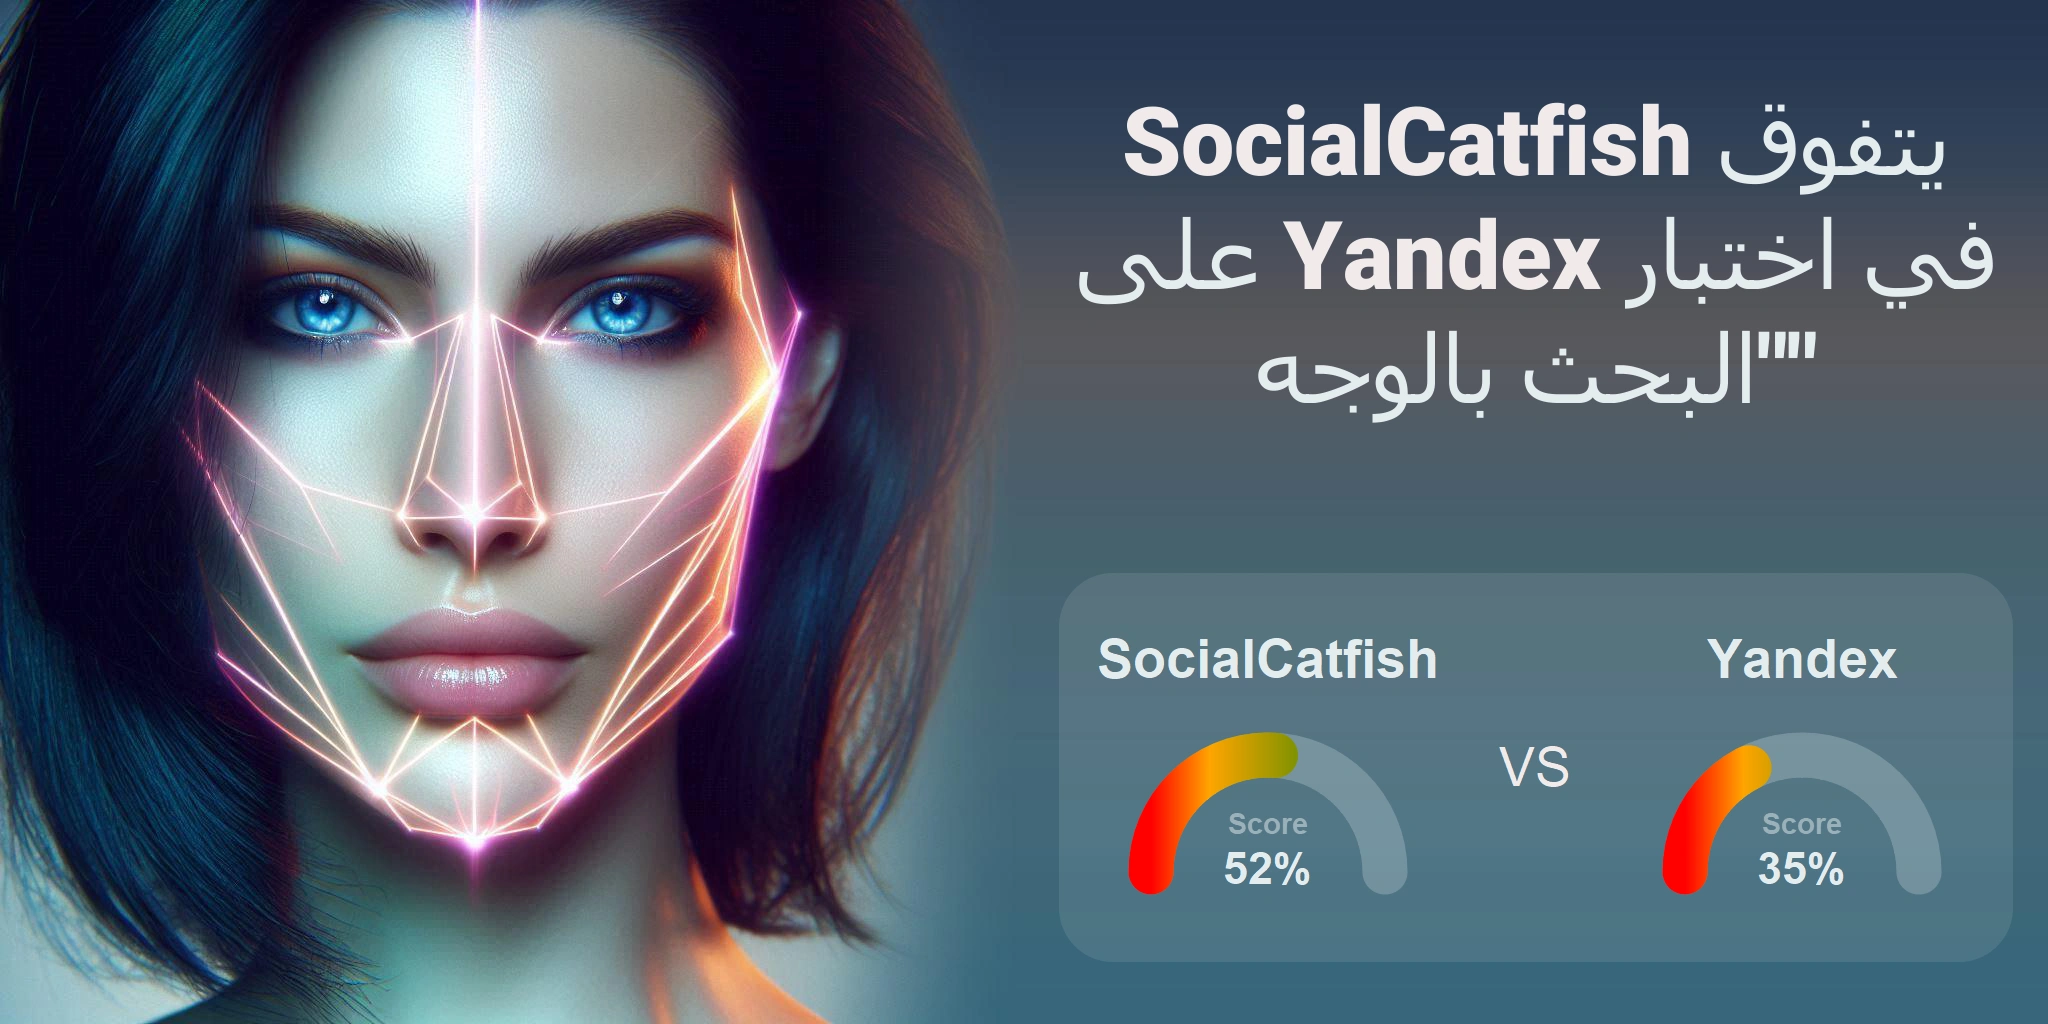 ما هو الأفضل للبحث بالوجه: <br>SocialCatfish أو Yandex؟